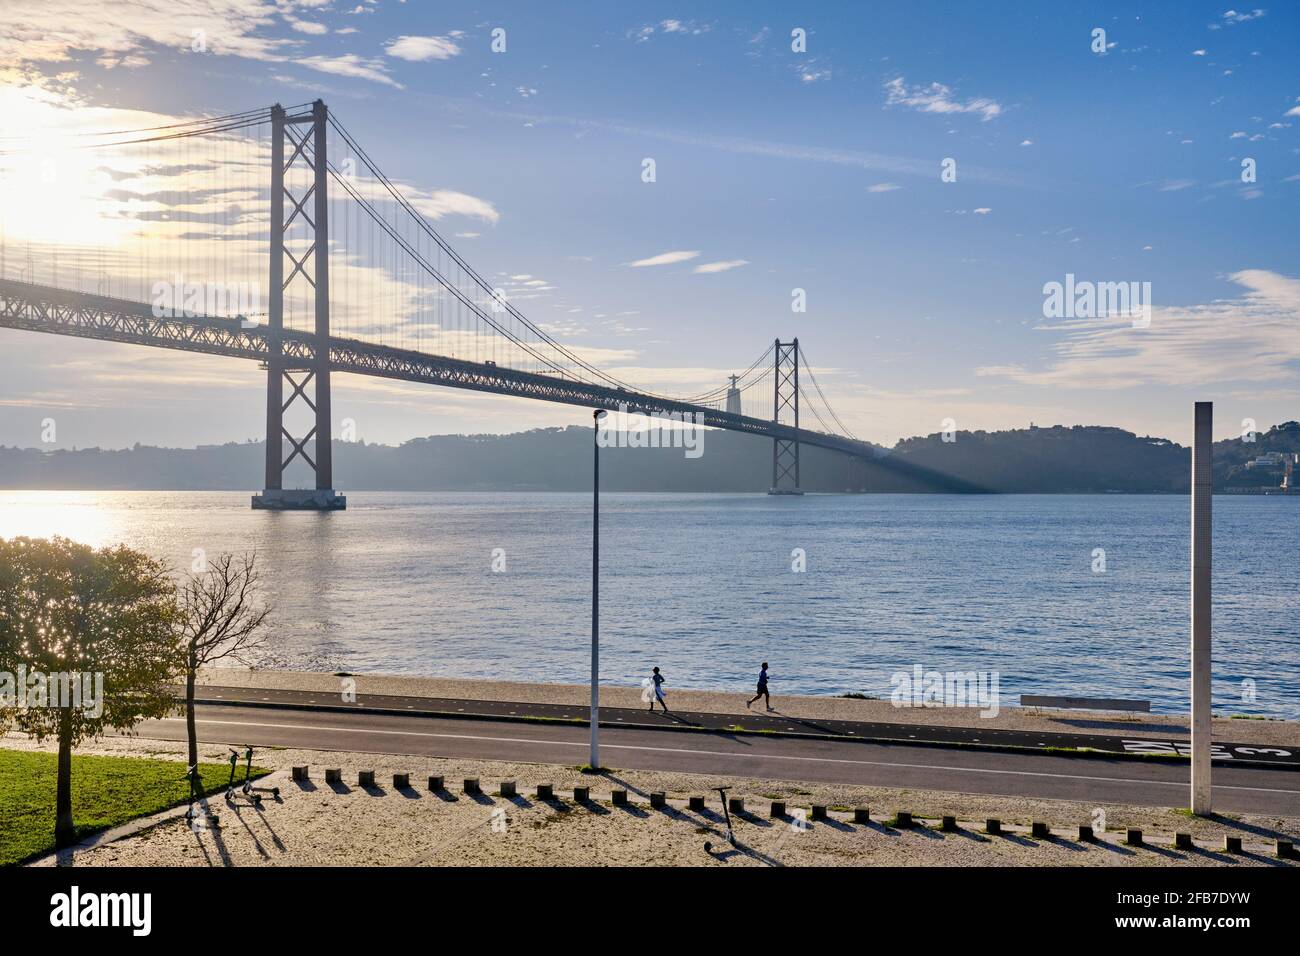 Aube sur les rives du Tage, près du pont du 25 avril. Lisbonne, Portugal Banque D'Images